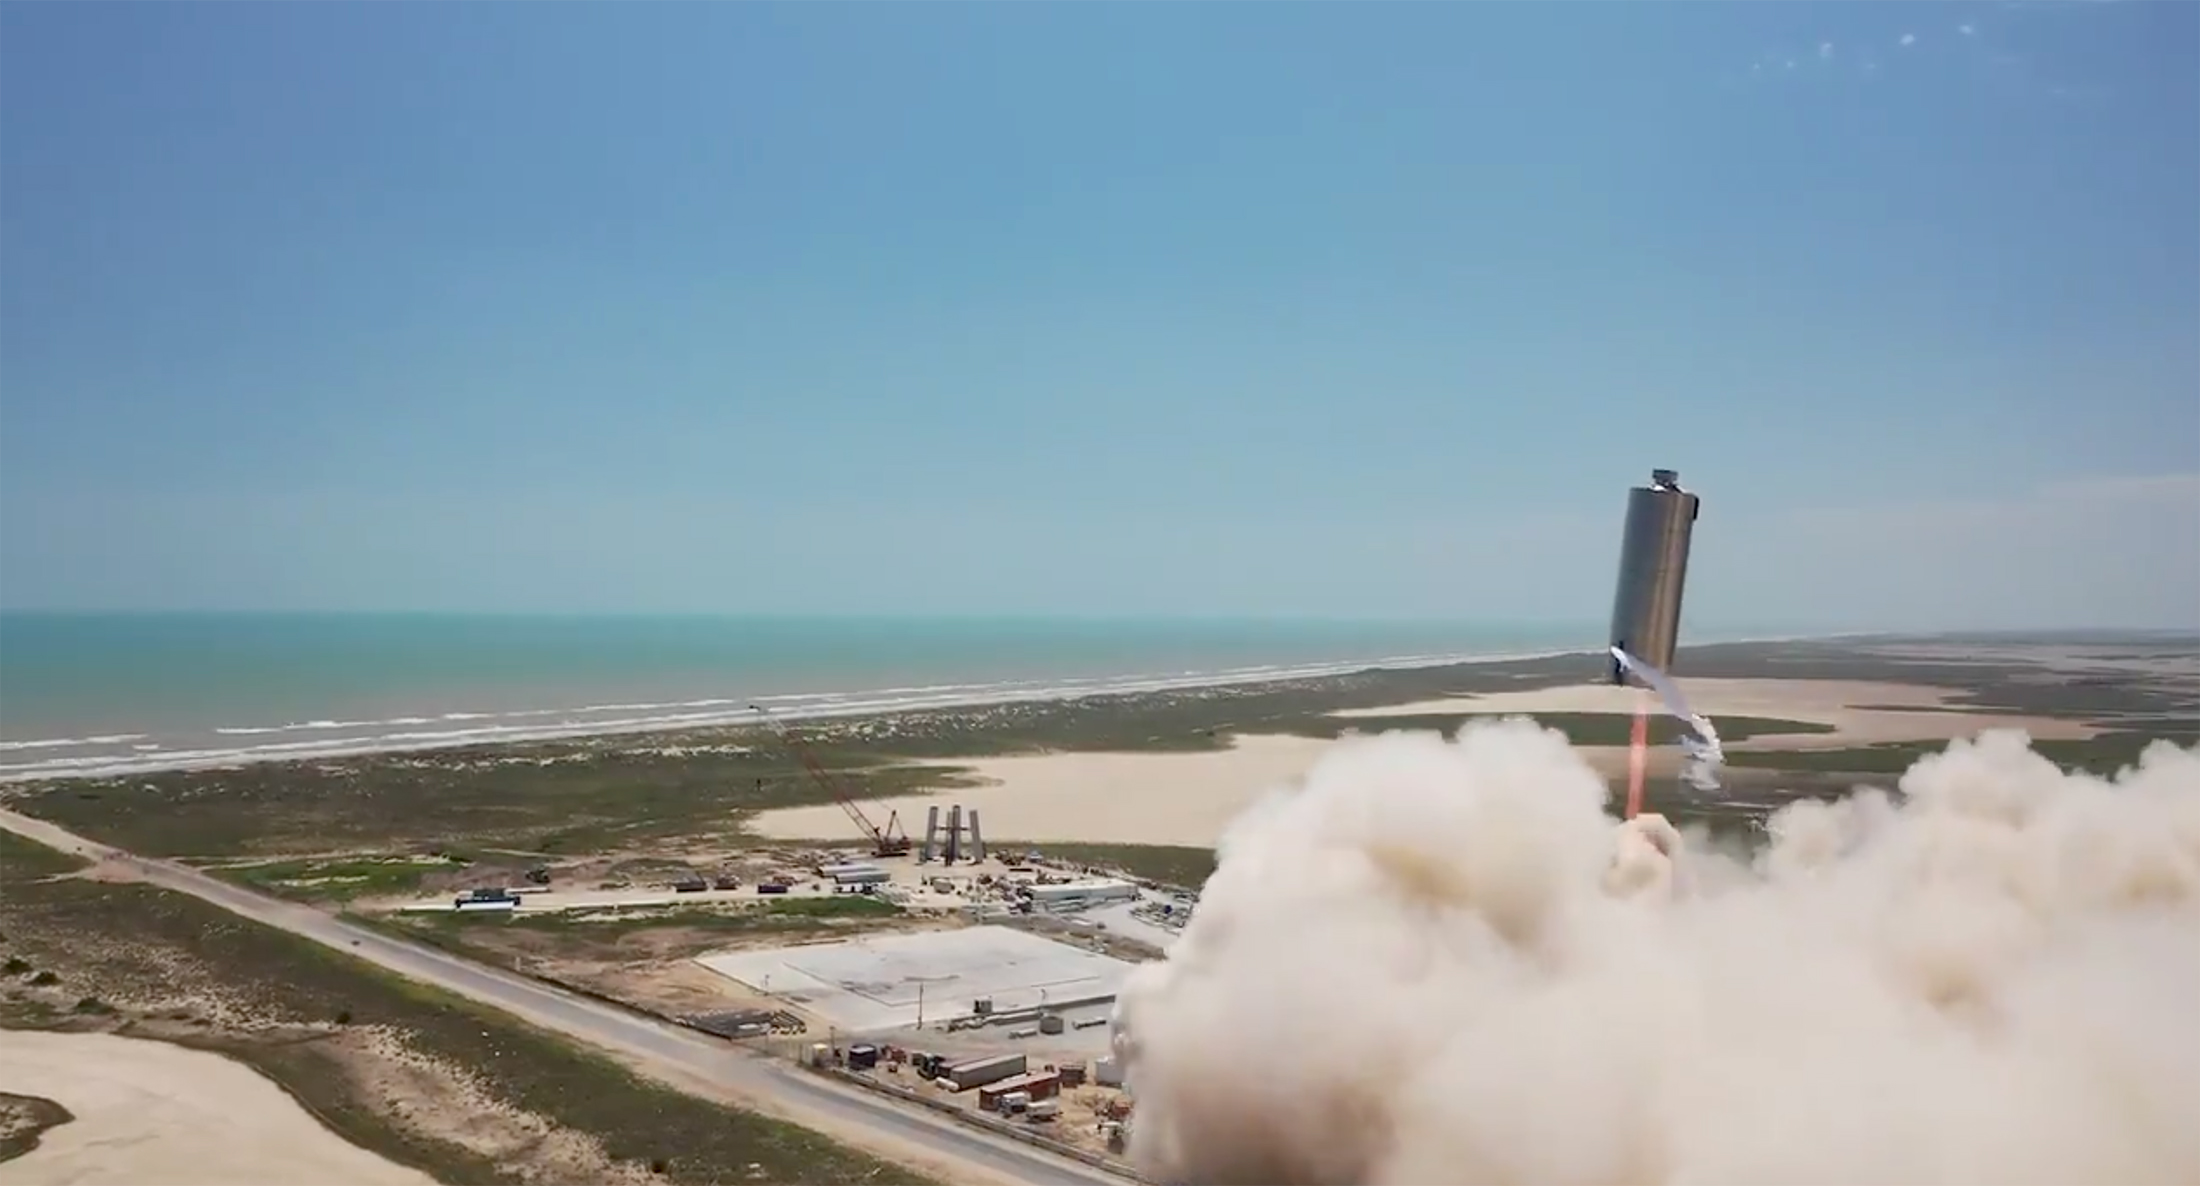 Le SN6 lors de son vol d'essai à 150 mètres de hauteur. © SpaceX 